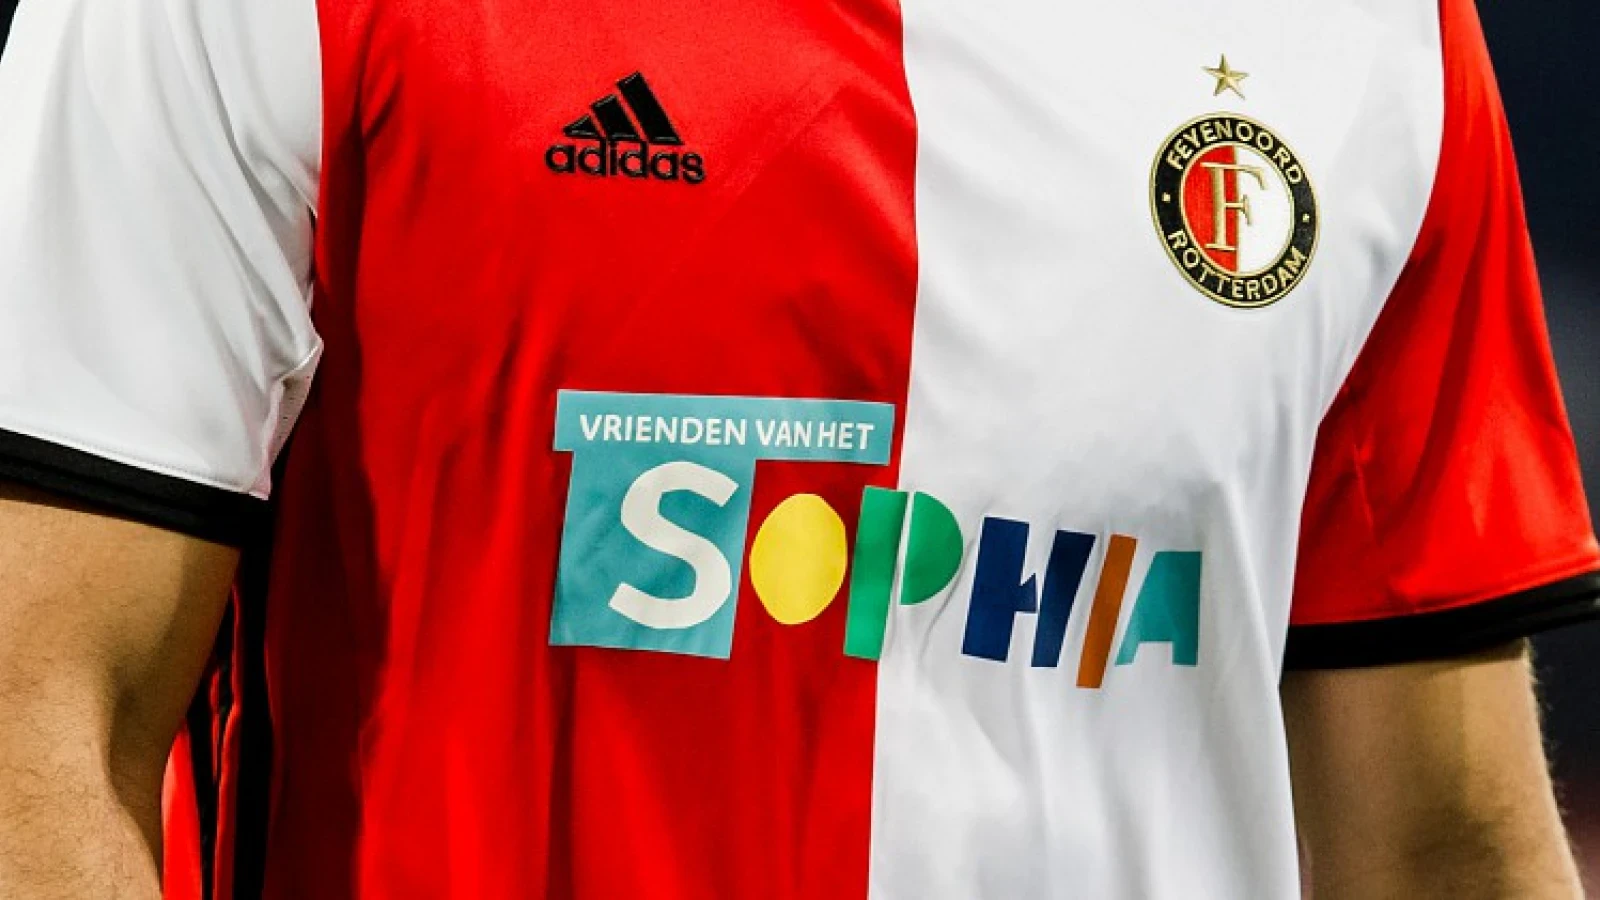 Feyenoord - AZ levert ruim dertig duizend euro op voor Sophia Kinderziekenhuis